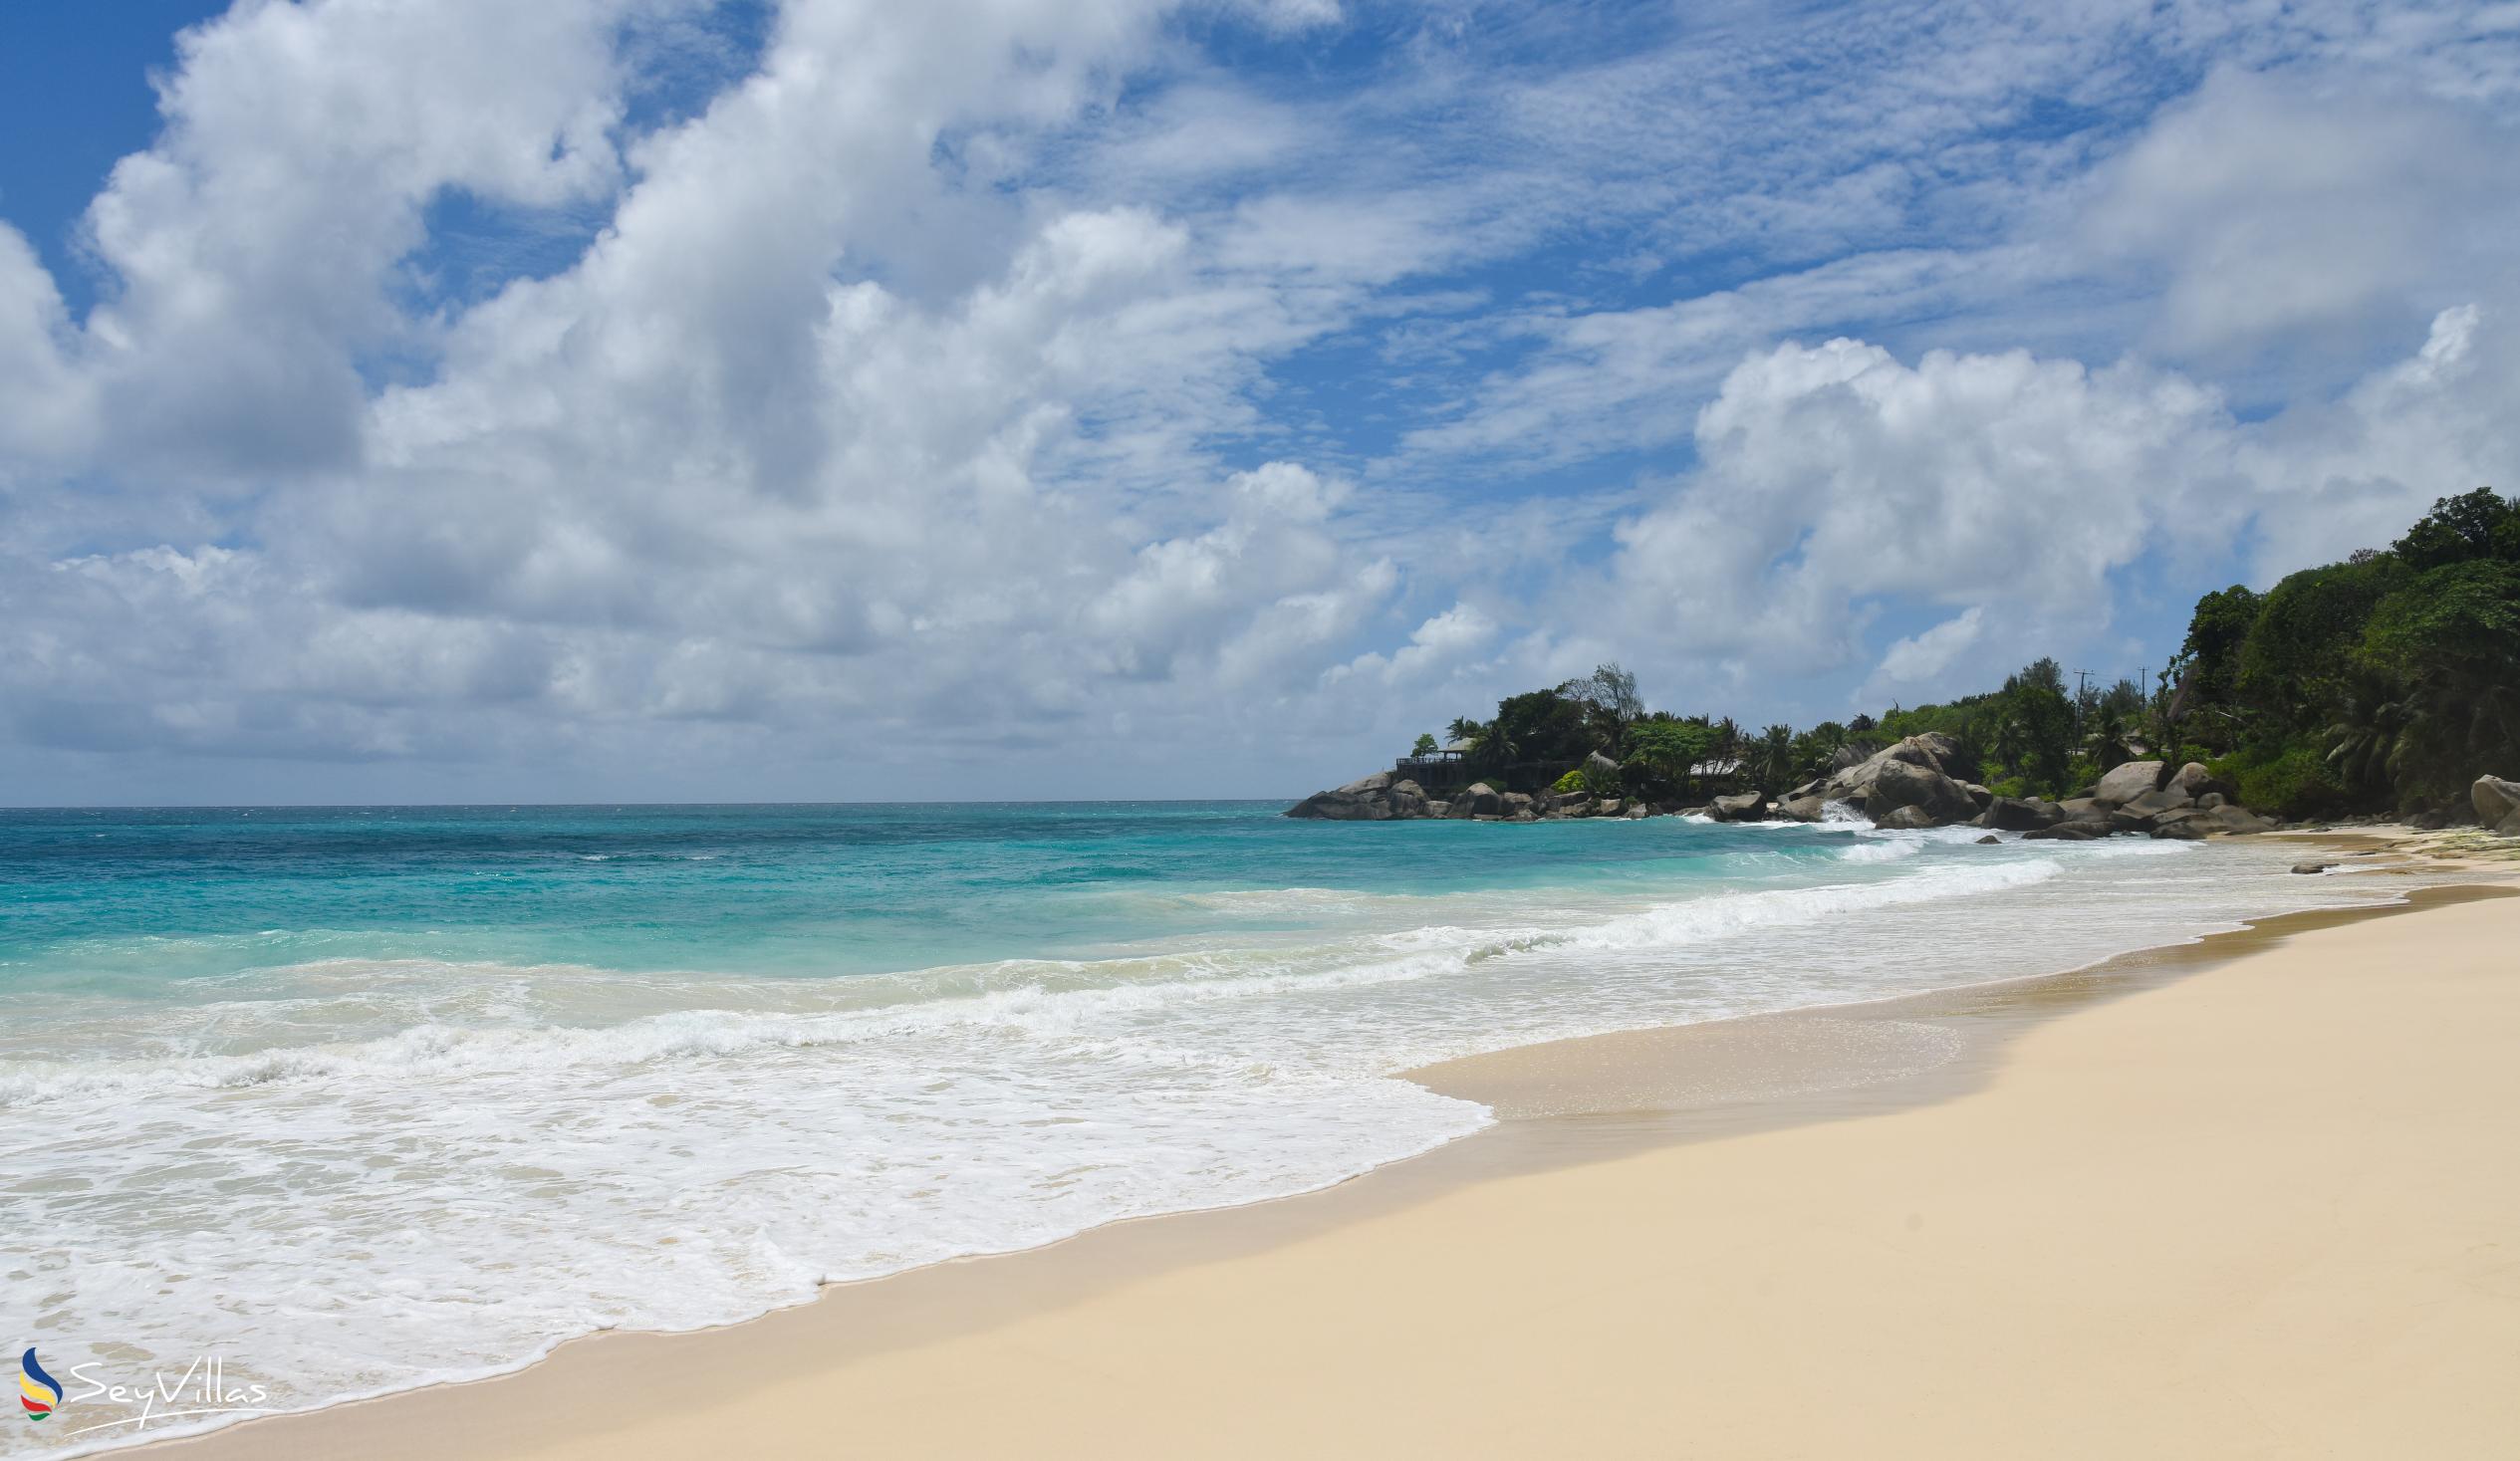 Photo 8: Carana Beach - Mahé (Seychelles)